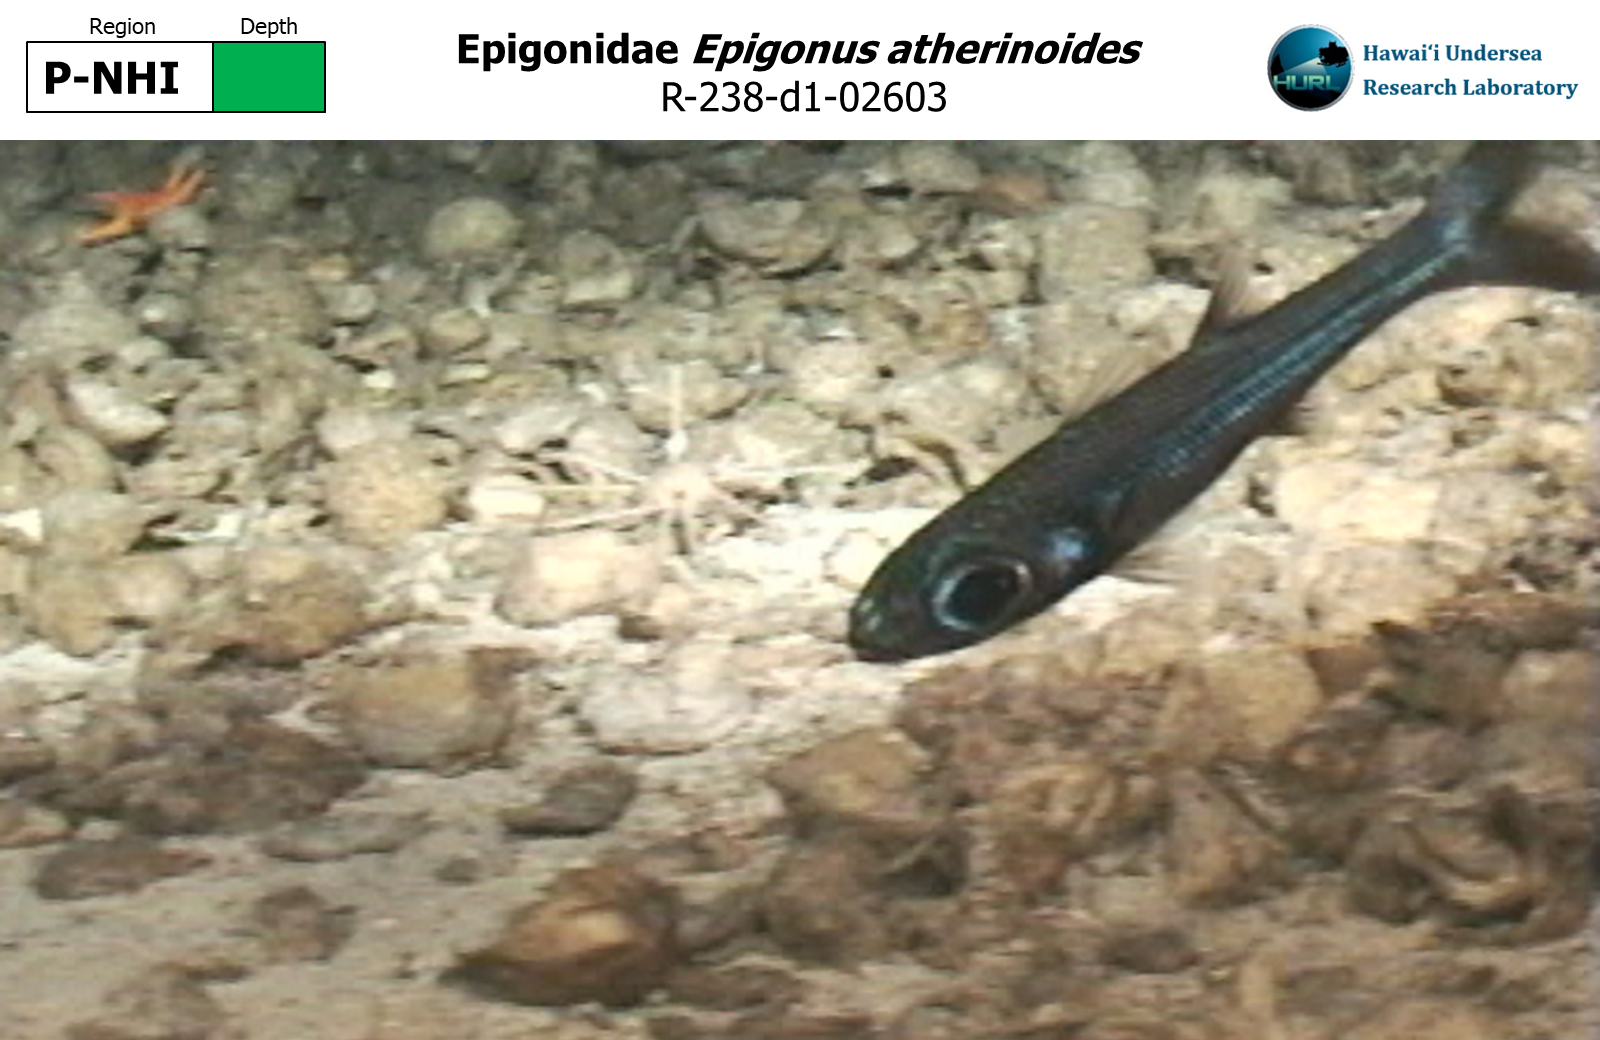 Epigonus atherinoides